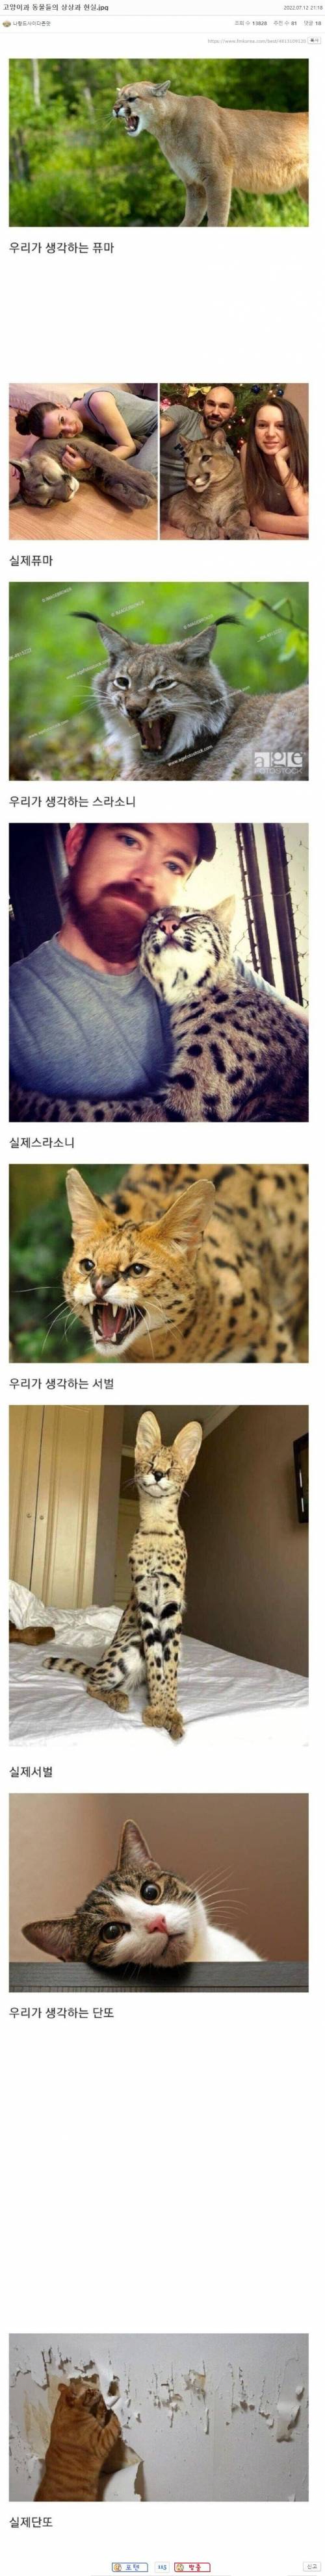 4 고양이과 동물들의 상상과 현실.jpg